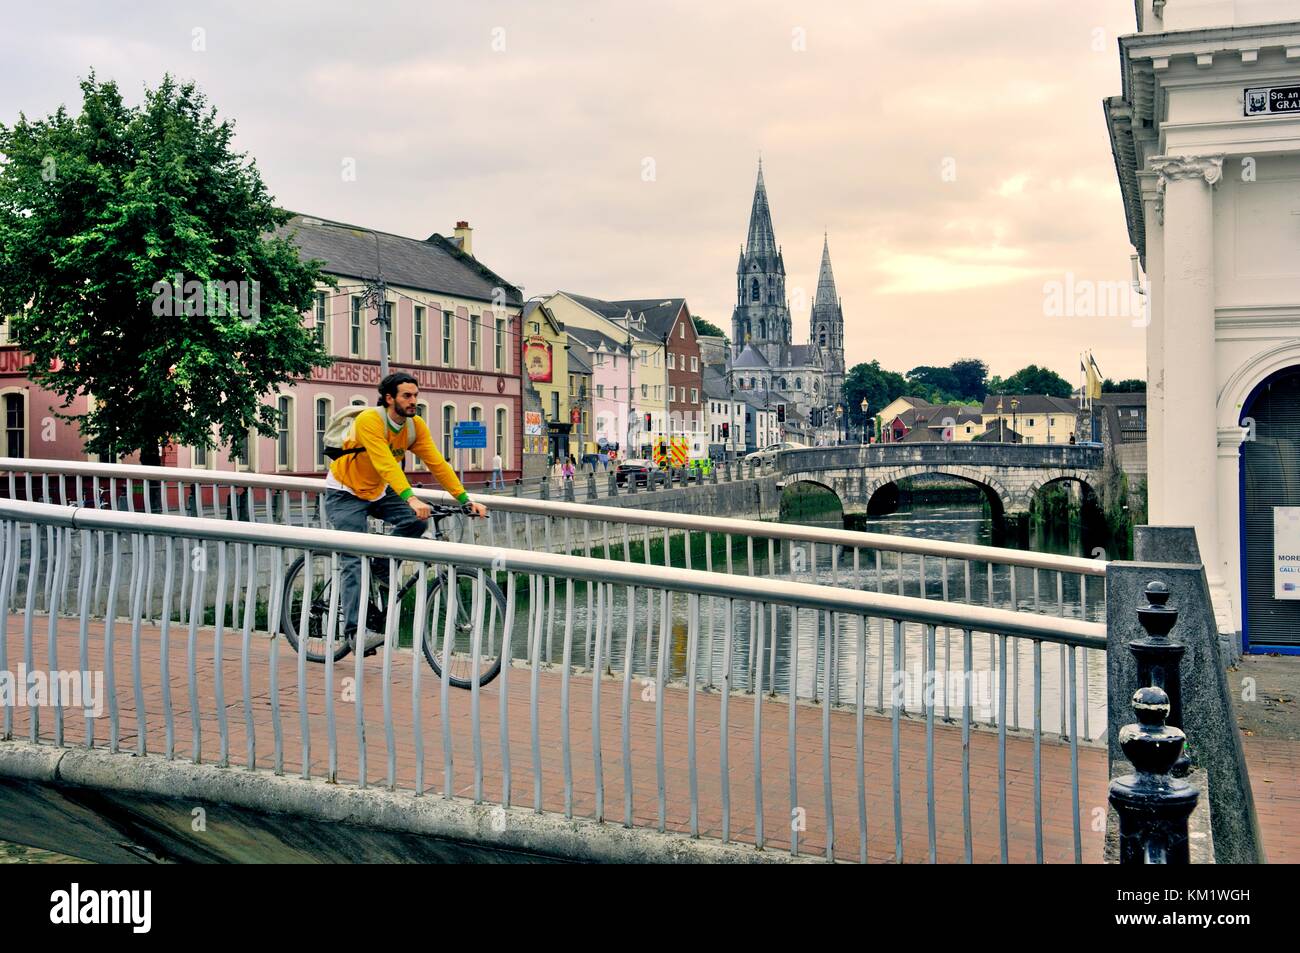 Al di là del fiume Lee dal fondo del Grand Parade a sud-ovest di Sullivan's Quay verso st finbarr cattedrale. La città di Cork, Irlanda. Foto Stock